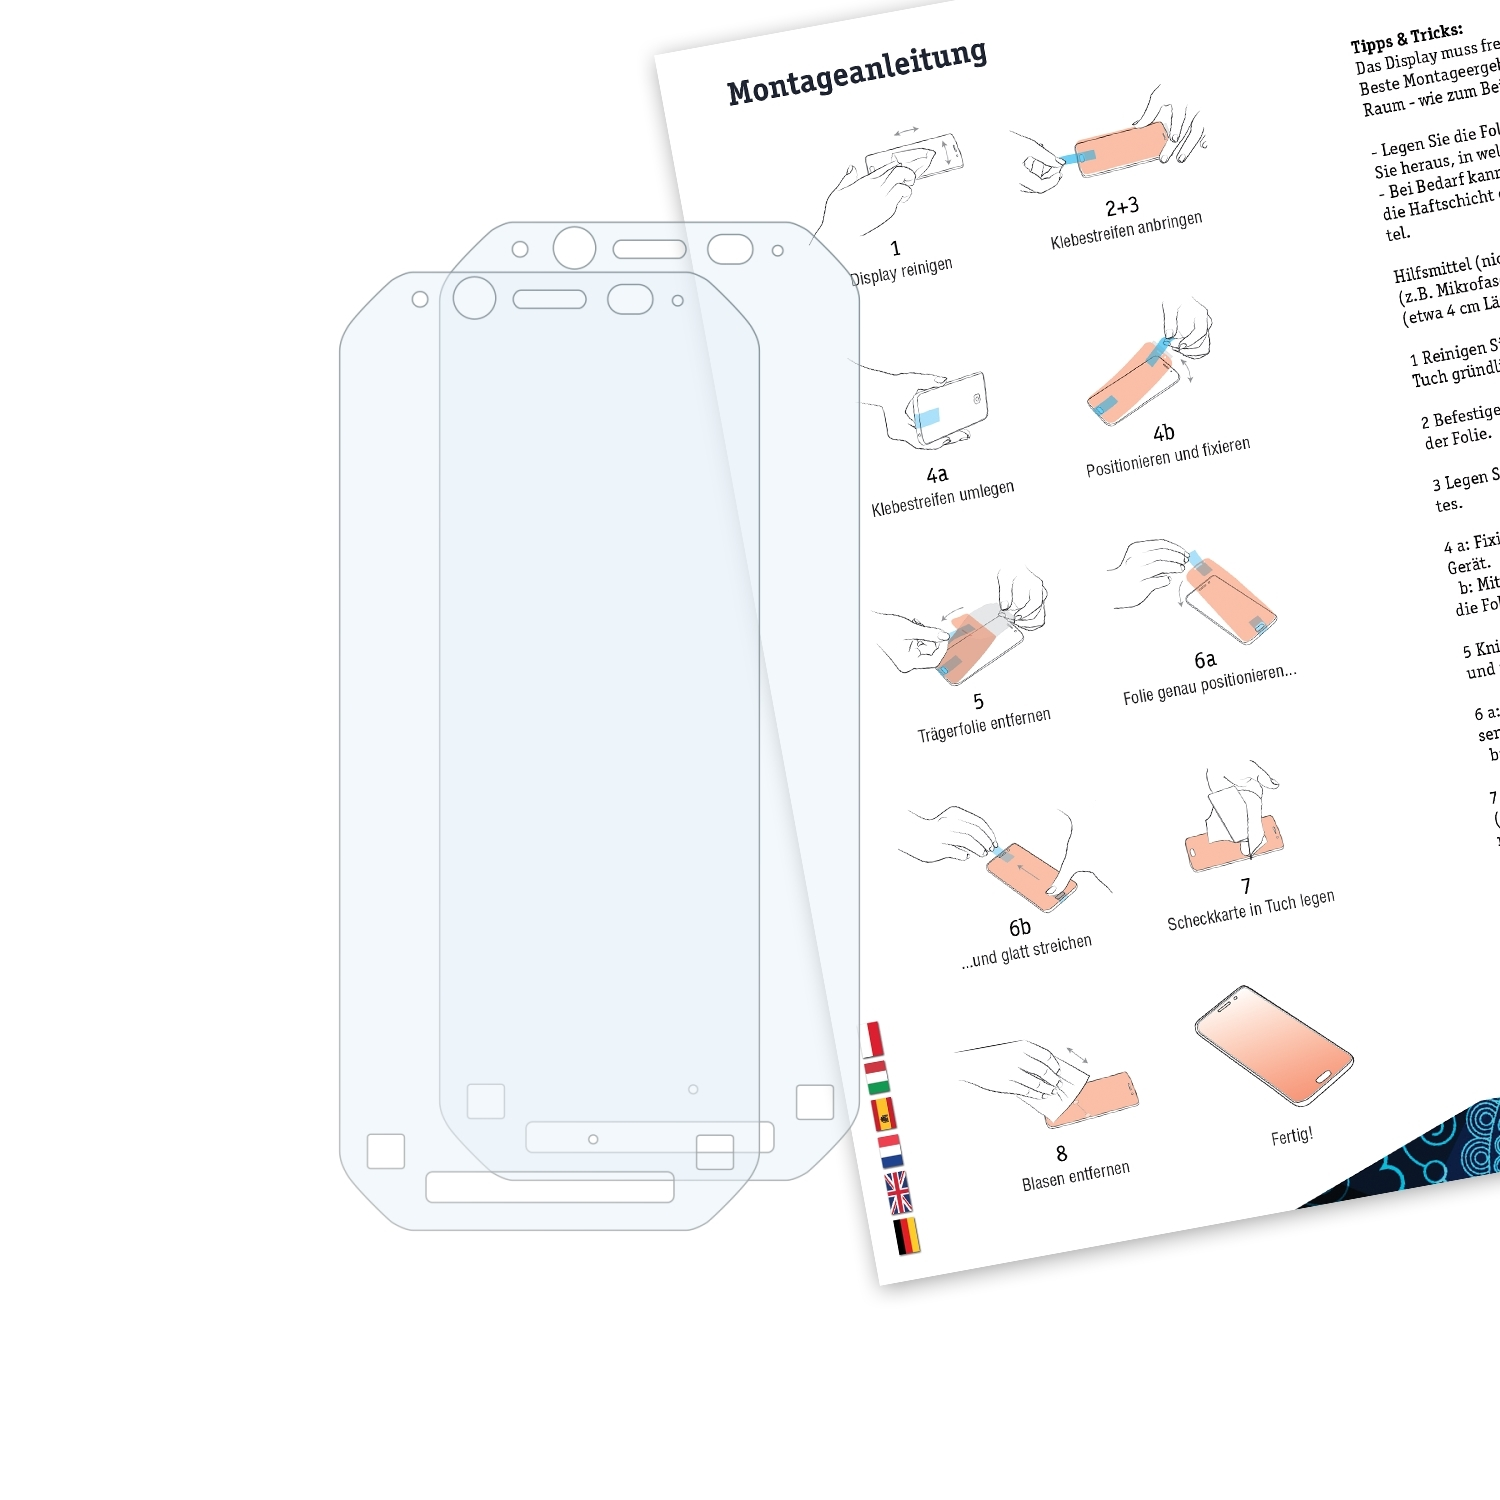 BRUNI 2x Schutzfolie(für Basics-Clear Panasonic FZ-N1) Toughbook